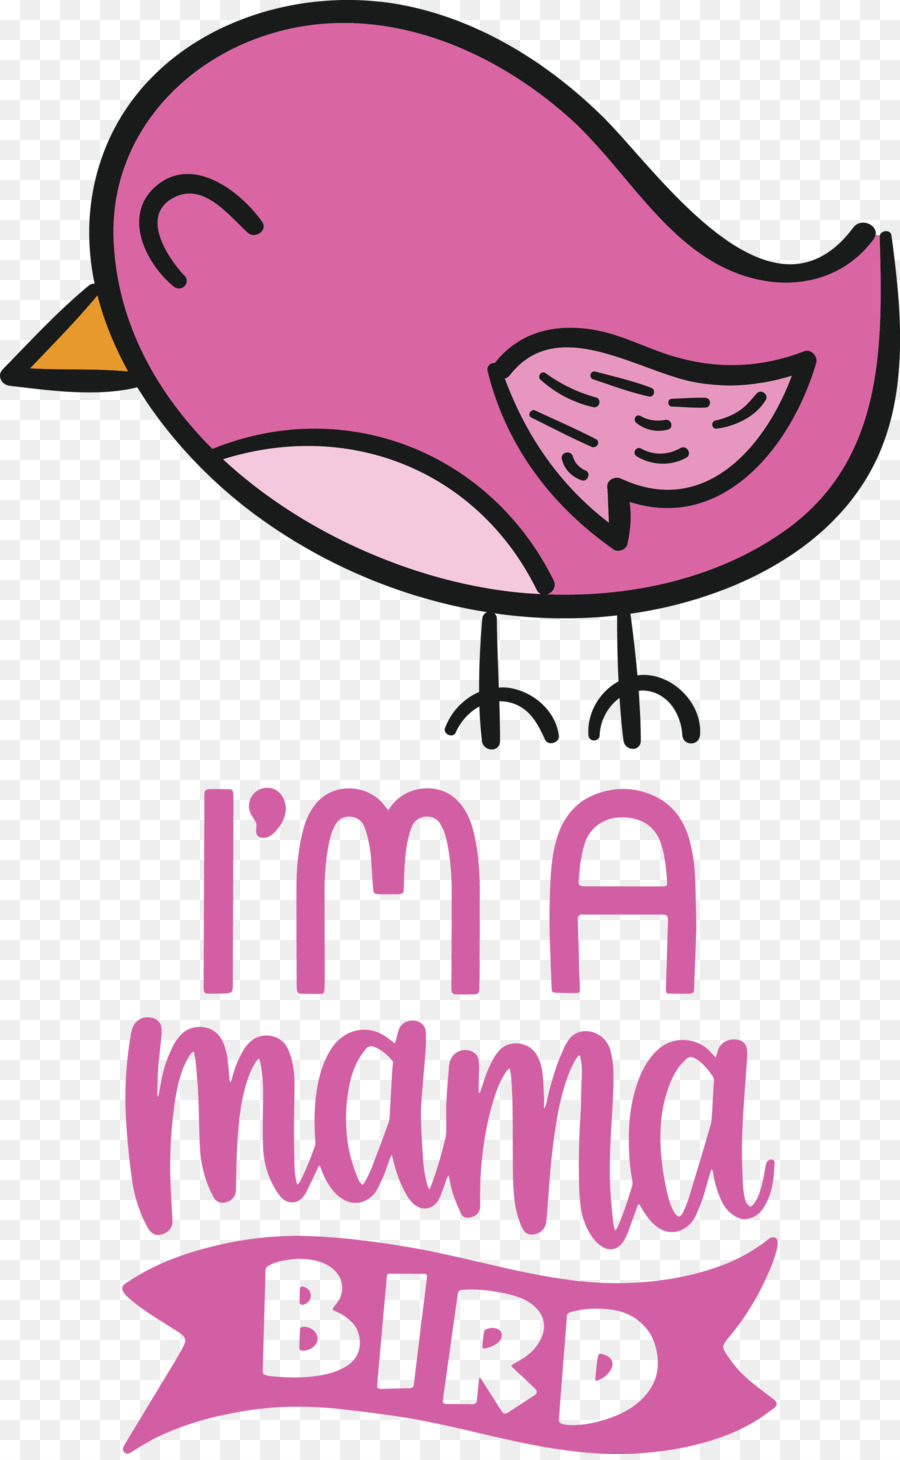 Citazione di Mama Bird Bird - 